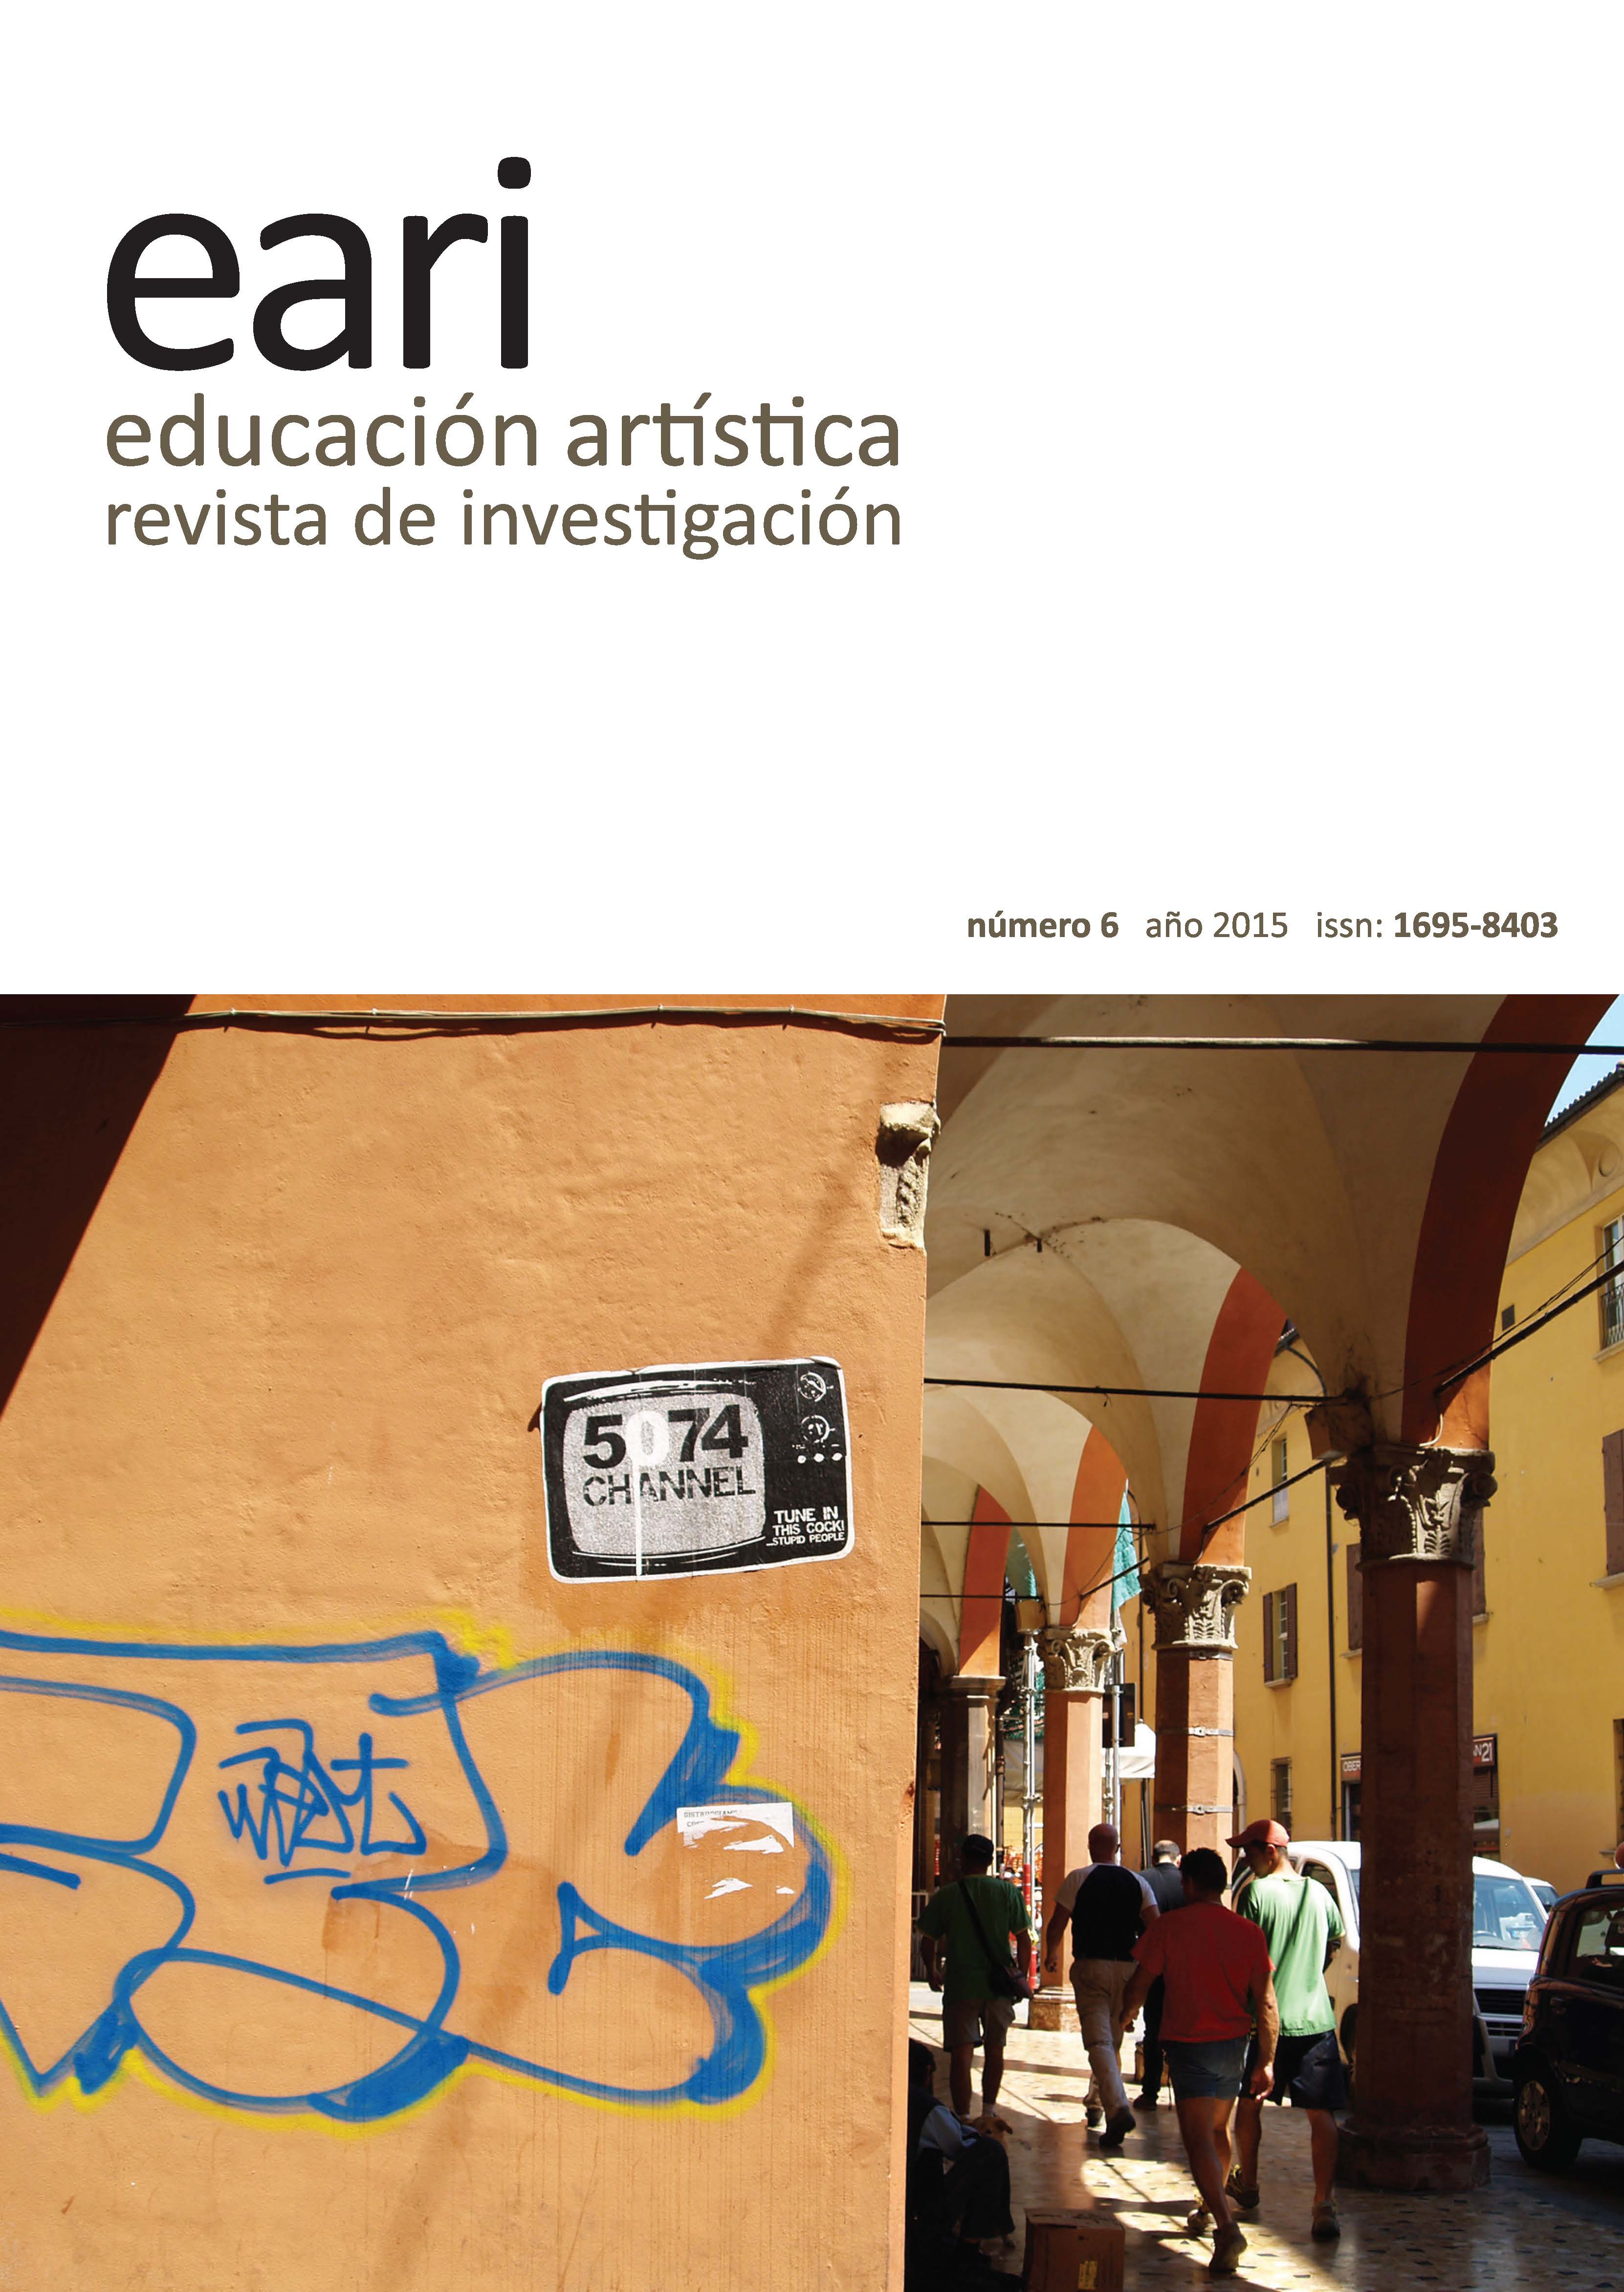 EARI Educación Artística Revista de Investigación